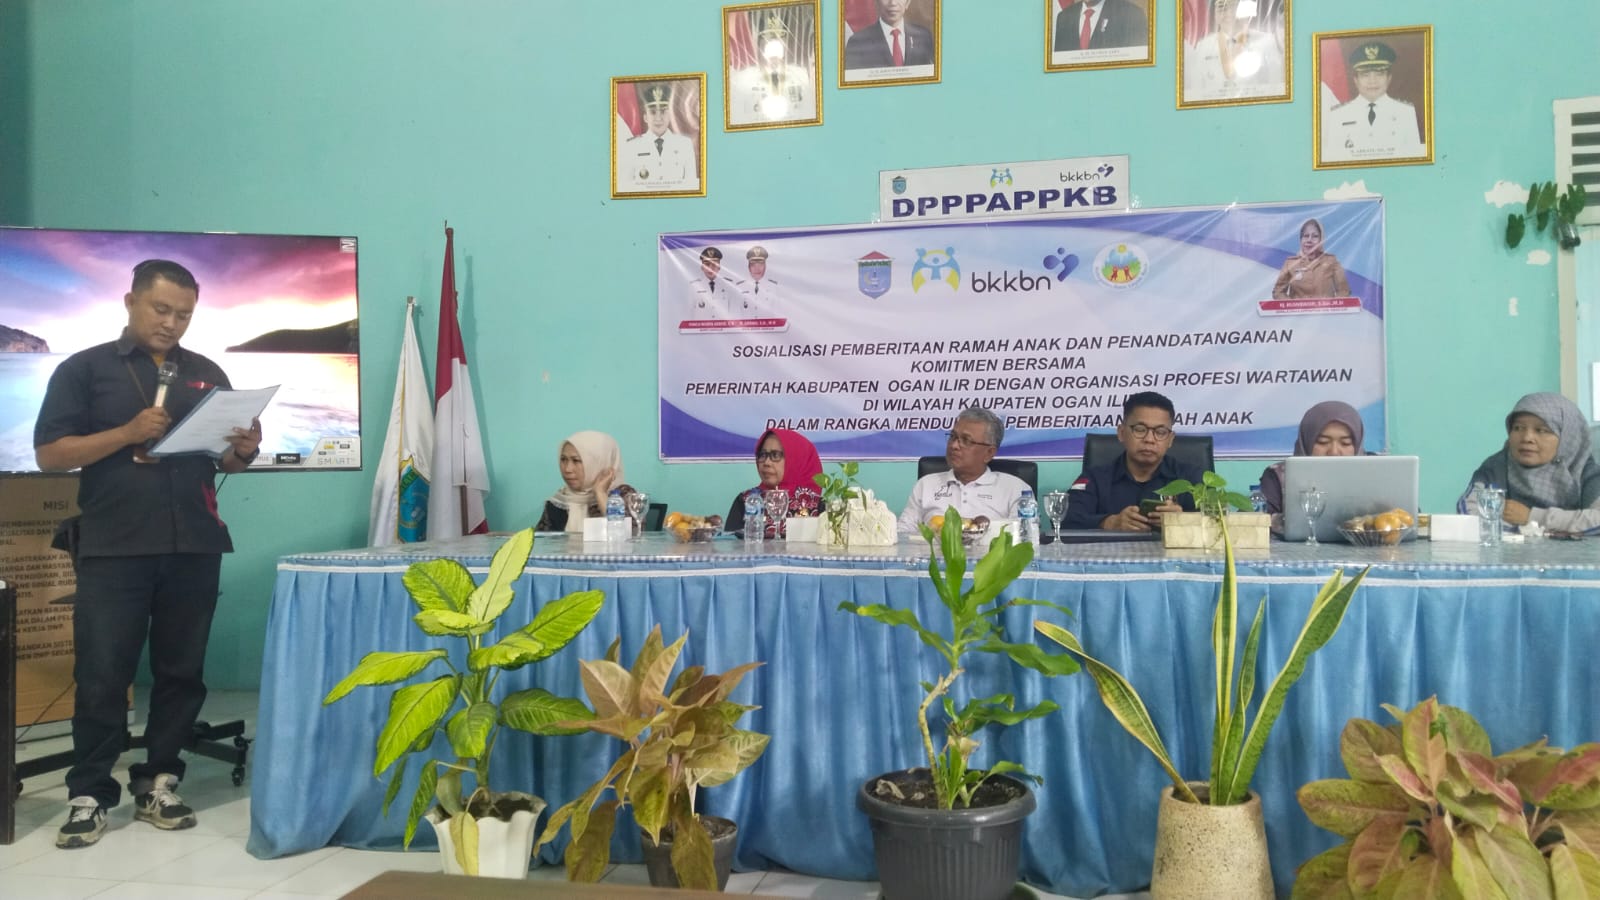 DPPPAPPKB Kabupaten Ogan Ilir Gelar Sosialisasi Pemberitaan Ramah Anak, Gandeng Organisasi Wartawan